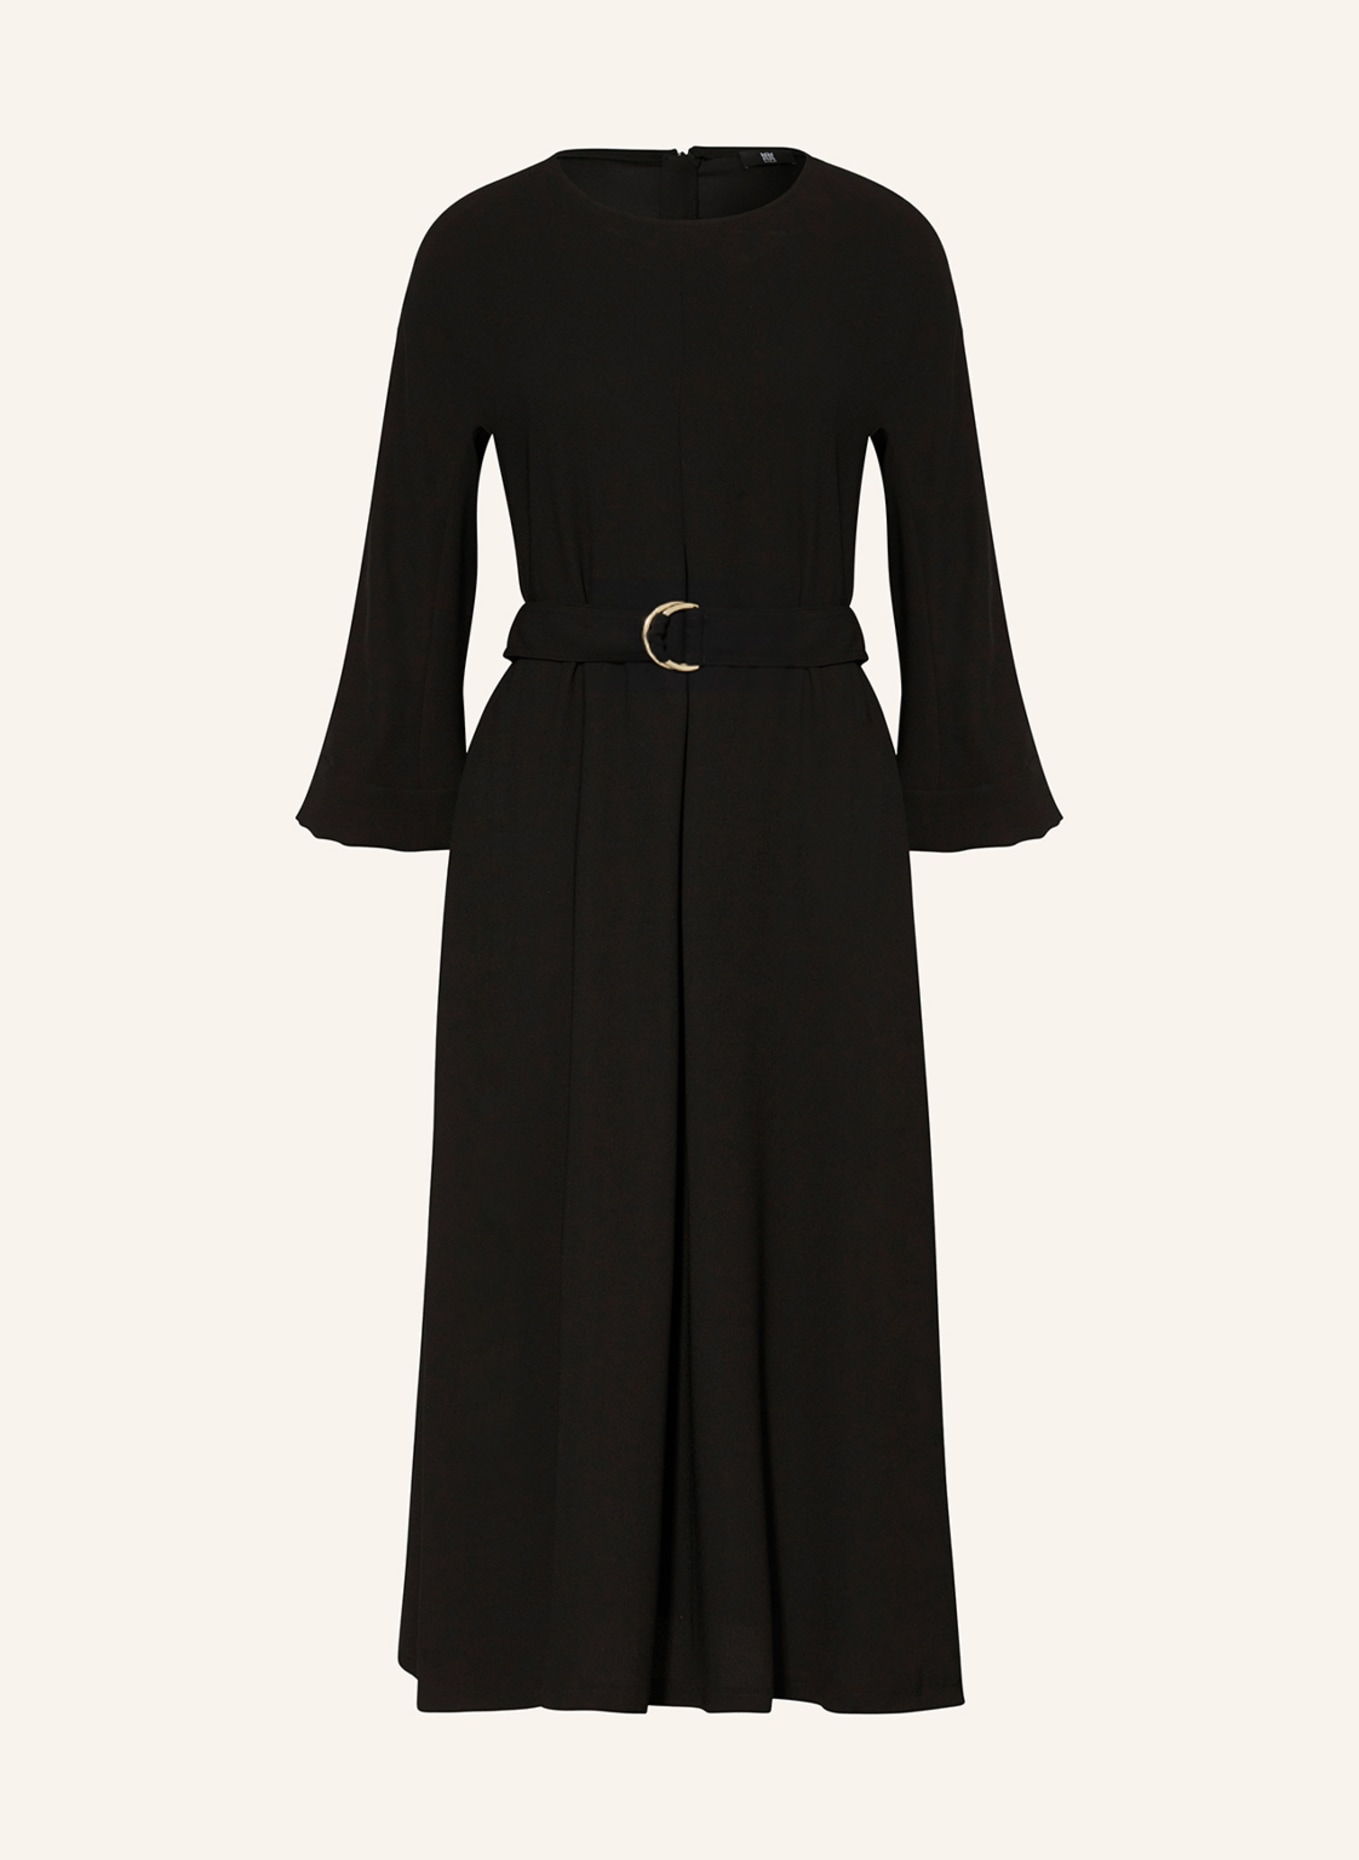 RIANI Kleid mit 3/4-Arm, Farbe: SCHWARZ (Bild 1)